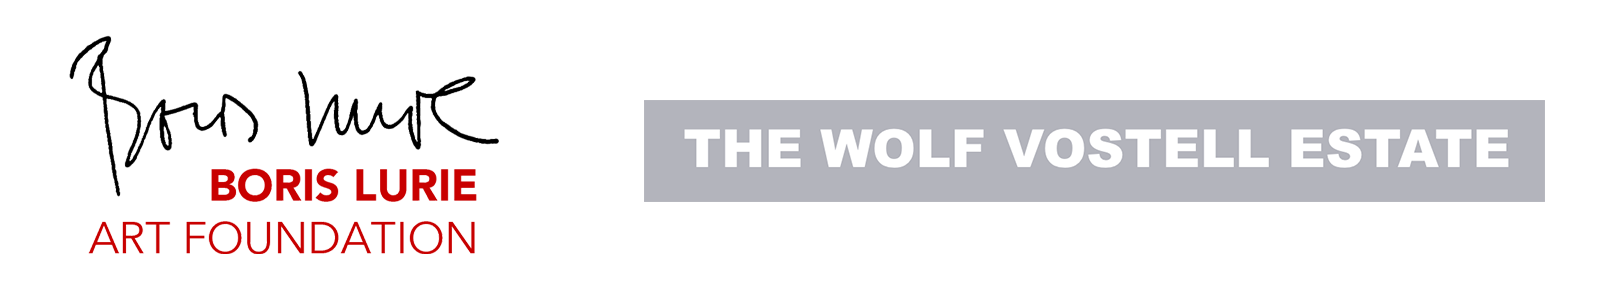 Támogatók: a Boris Lurie Alapítvány és a Wolf Vostell Estate